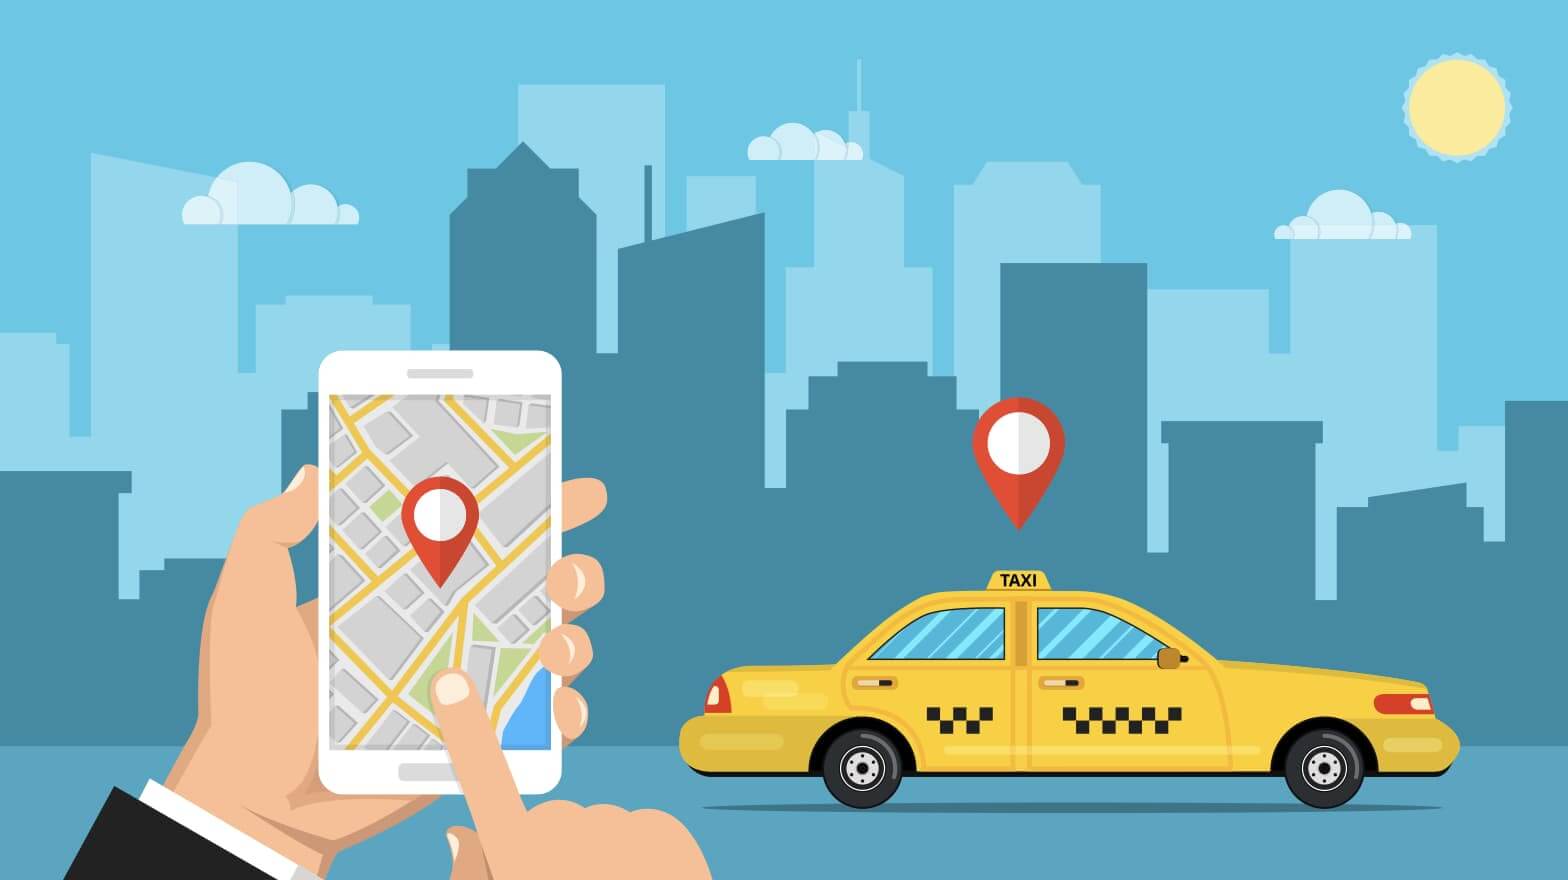 木更津で使えるタクシーアプリとクーポン情報